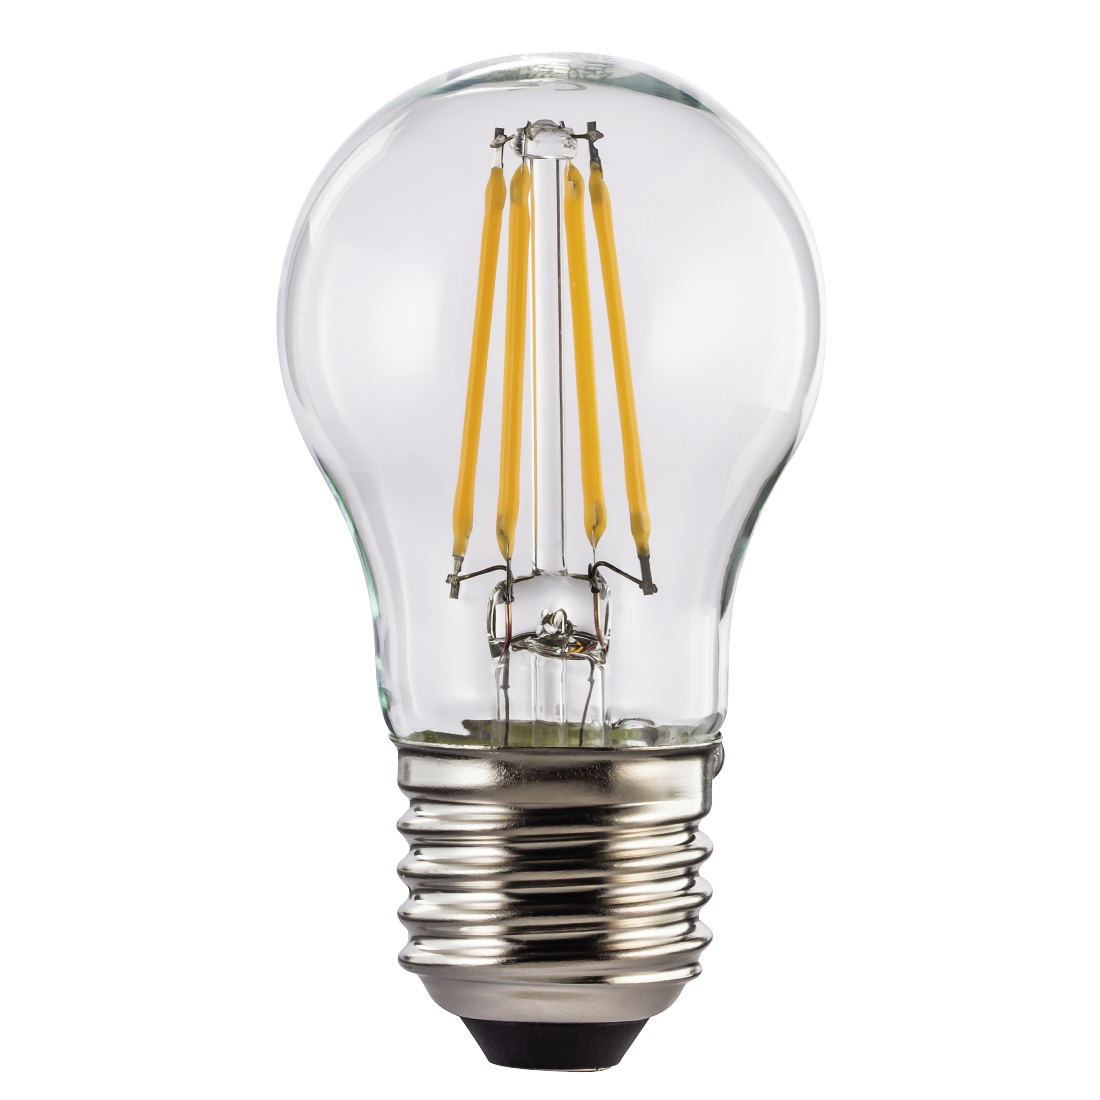 abx High-Res Image - Xavax, Ampoule filament à LED, E27, 470lm rempl. ampoule sphér. 40 W, blc chd